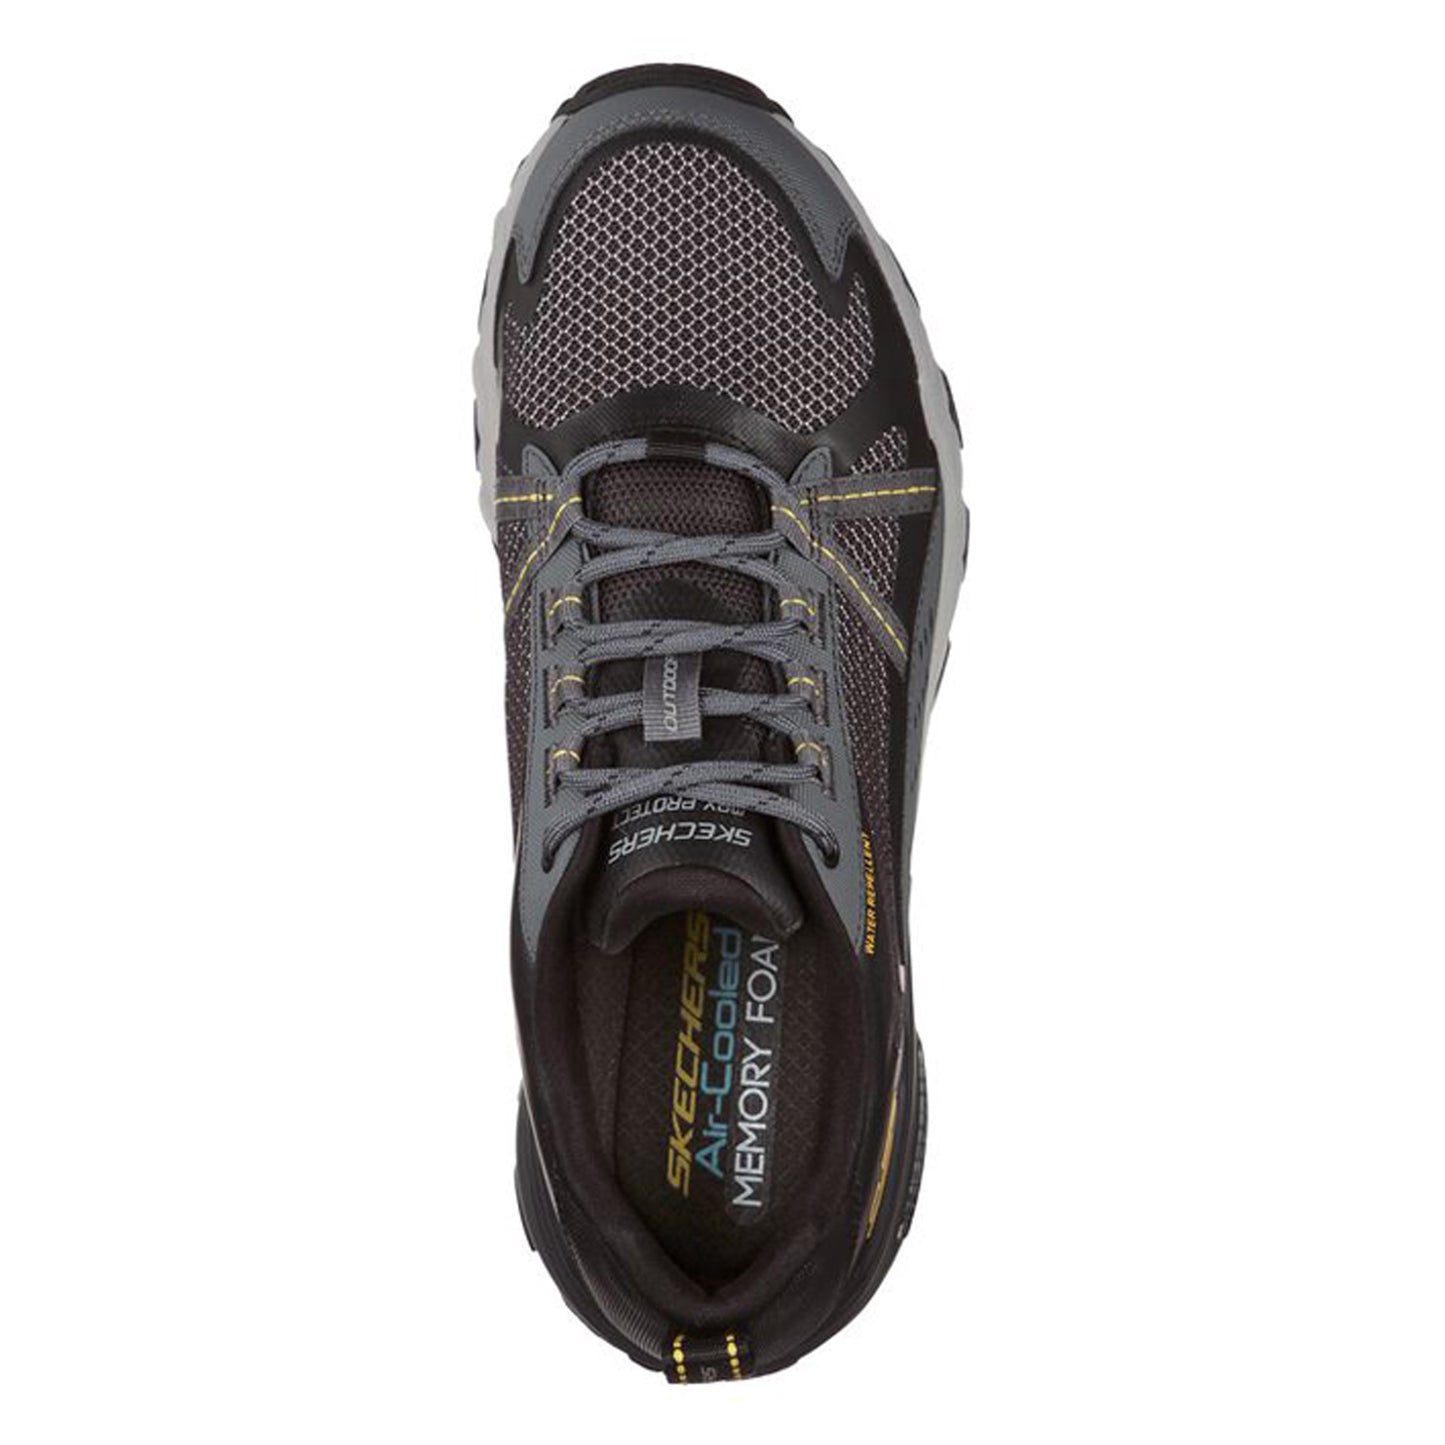 Peltz Shoes  Men's Skechers Max Protect Hiking Shoe Black/Charcoal 237303-BKCC